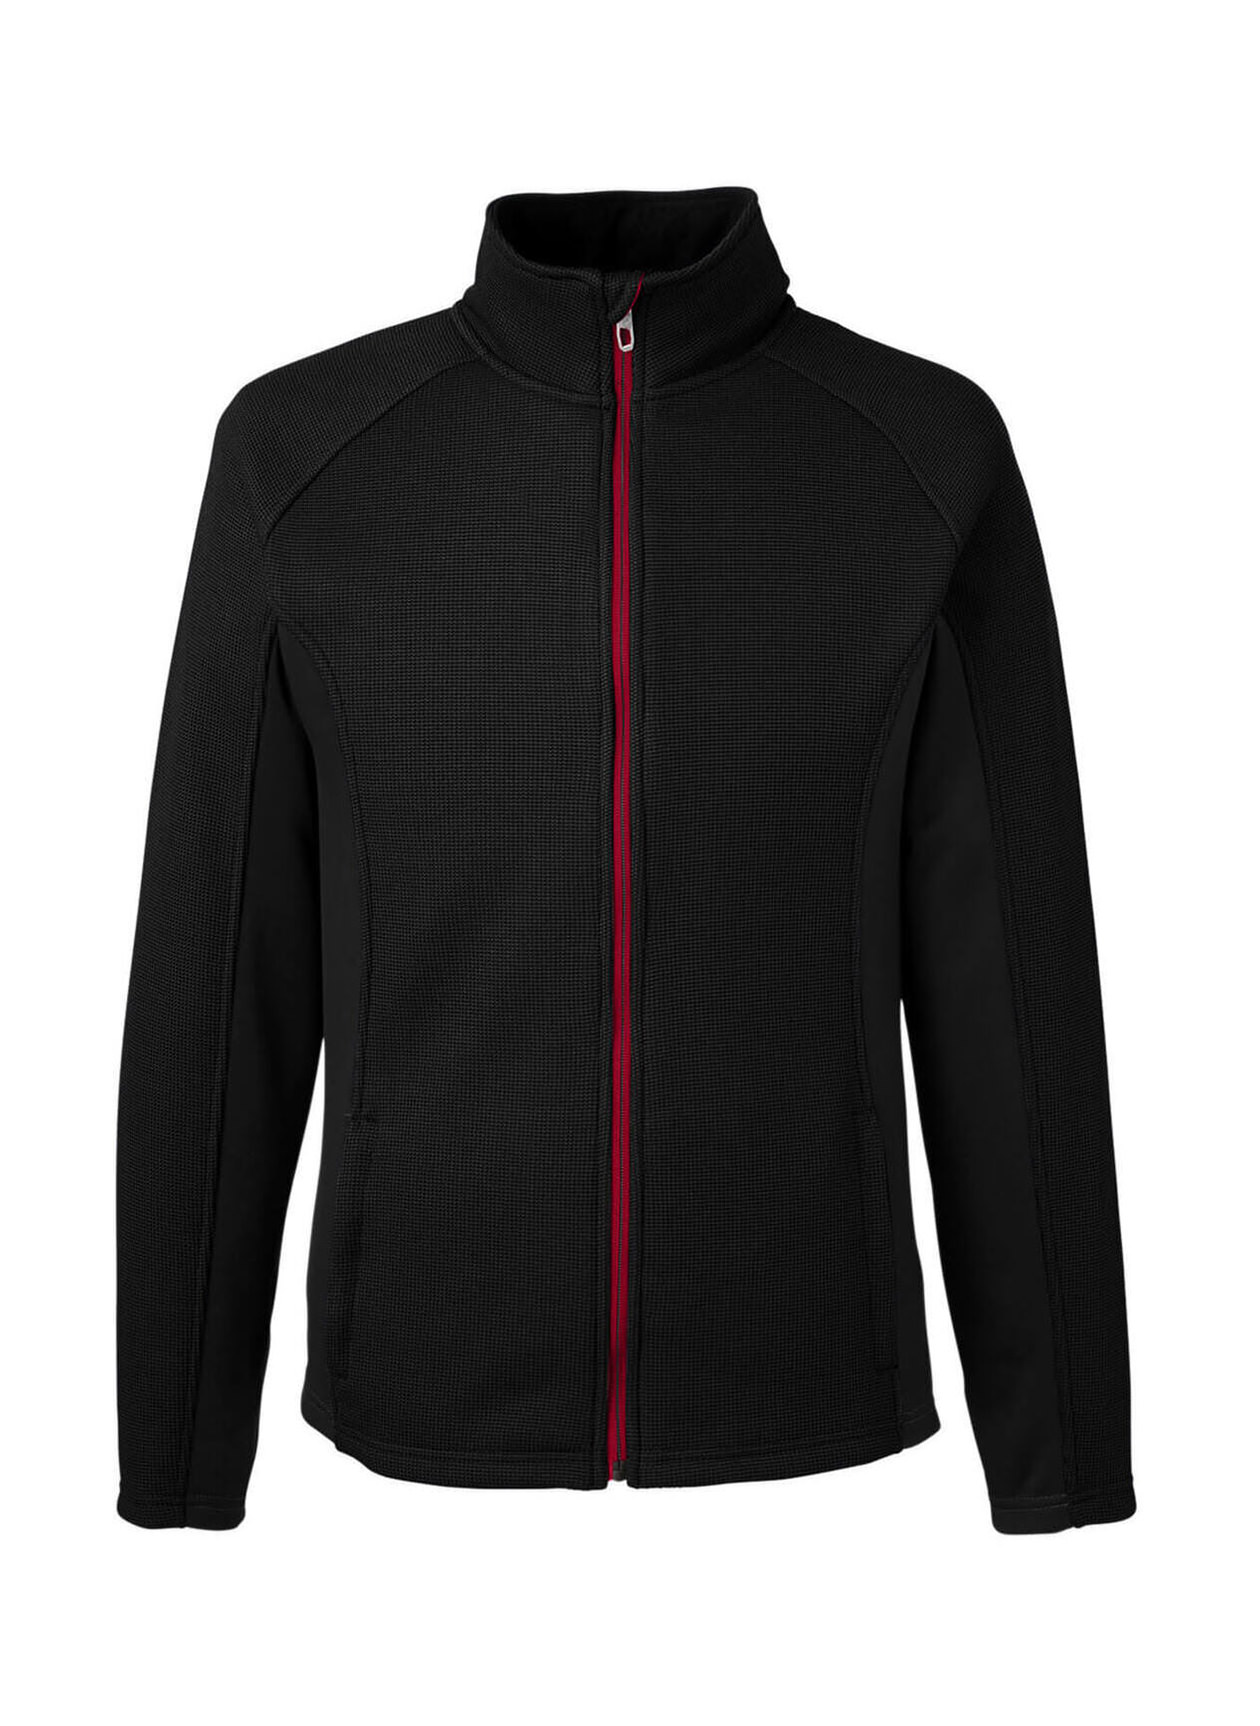 Corporate Spyder Men's Black-Red Constant Sweater Fleece Jacket